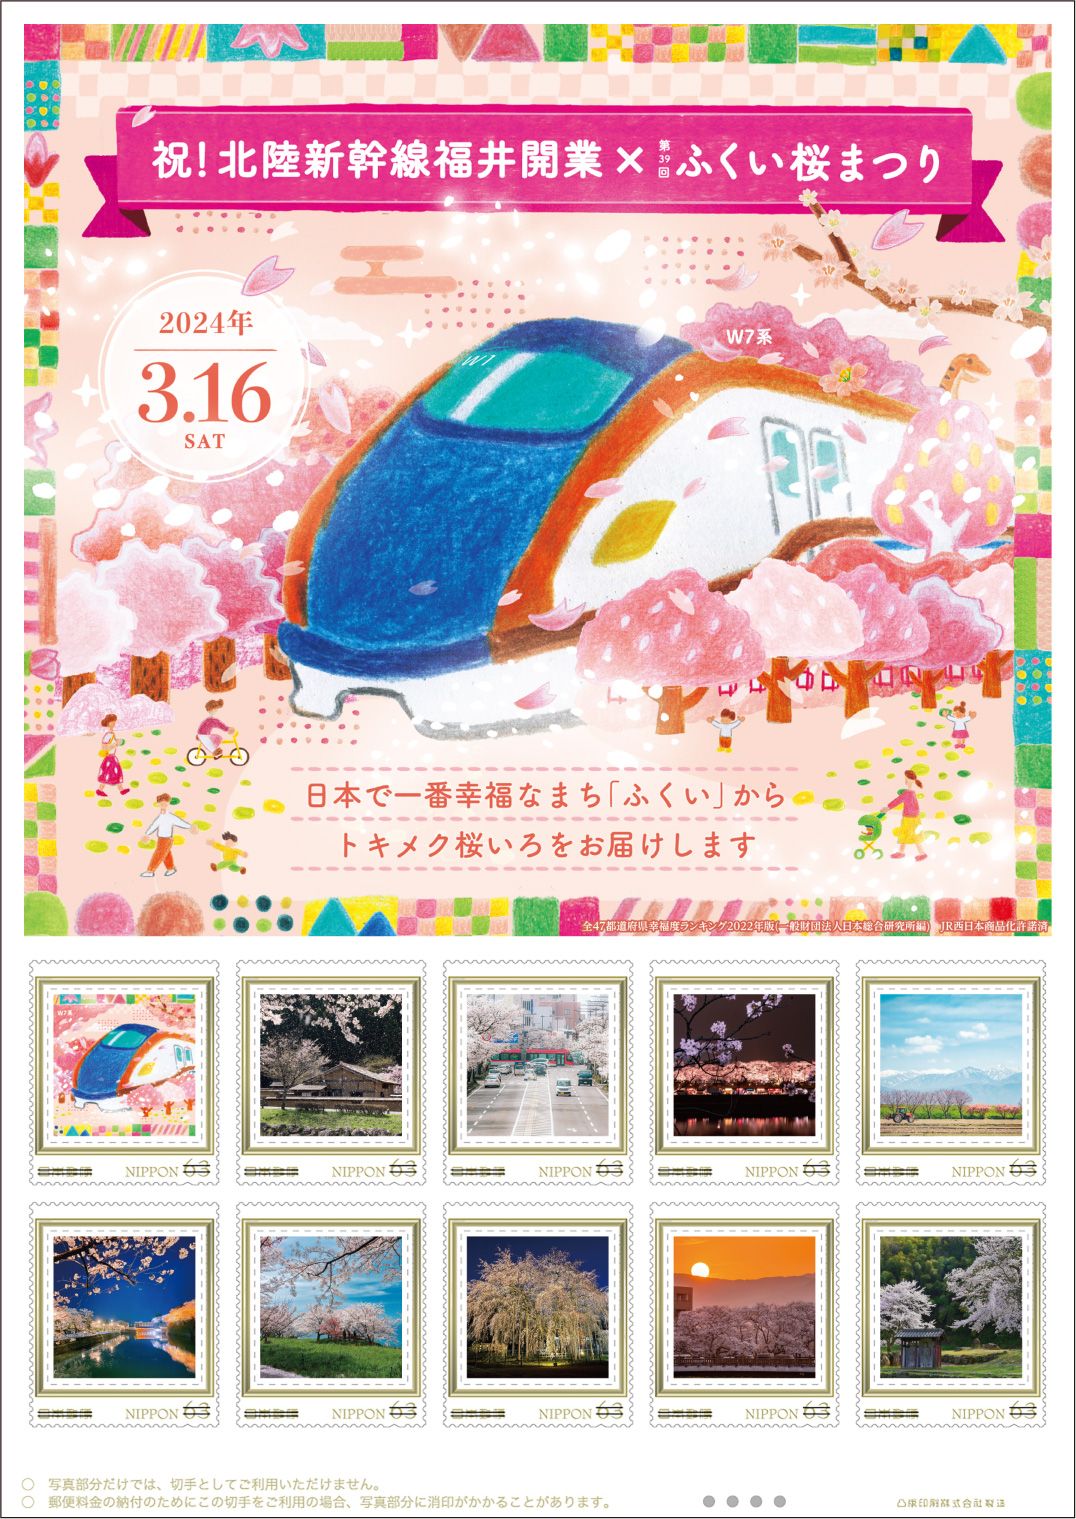 オリジナル フレーム切手セット「祝！北陸新幹線福井開業×第39回ふくい桜まつり」の販売開始